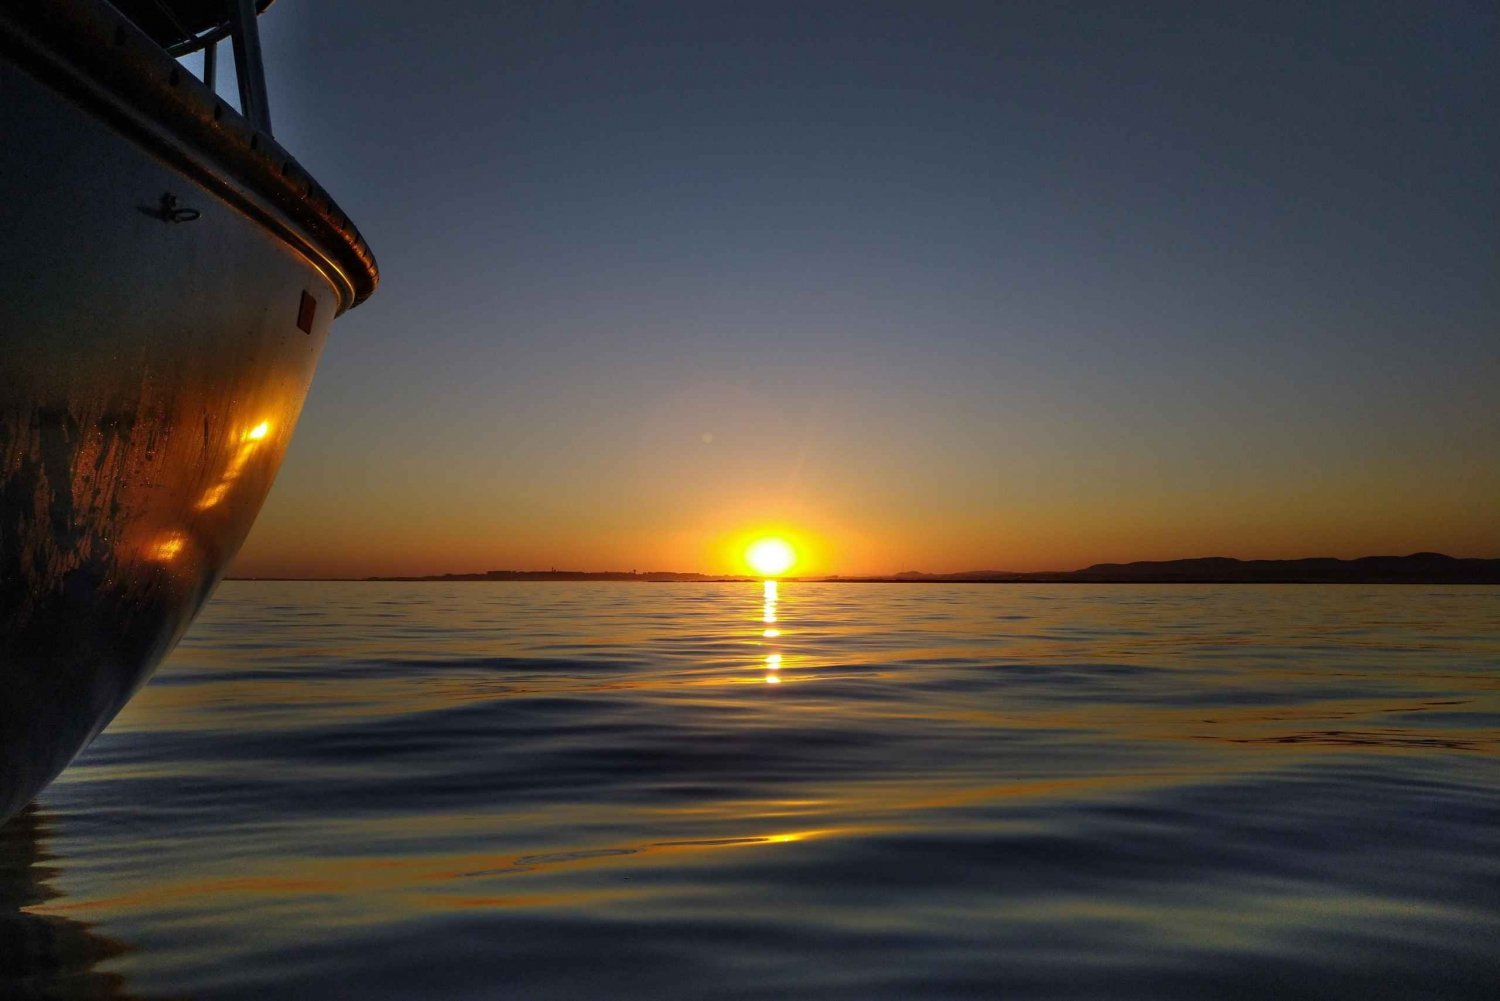 リア・フォルモーサ・オリャンのクラシックなボートで夕日を楽しみながら、ドリンクと音楽を楽しみましょう。